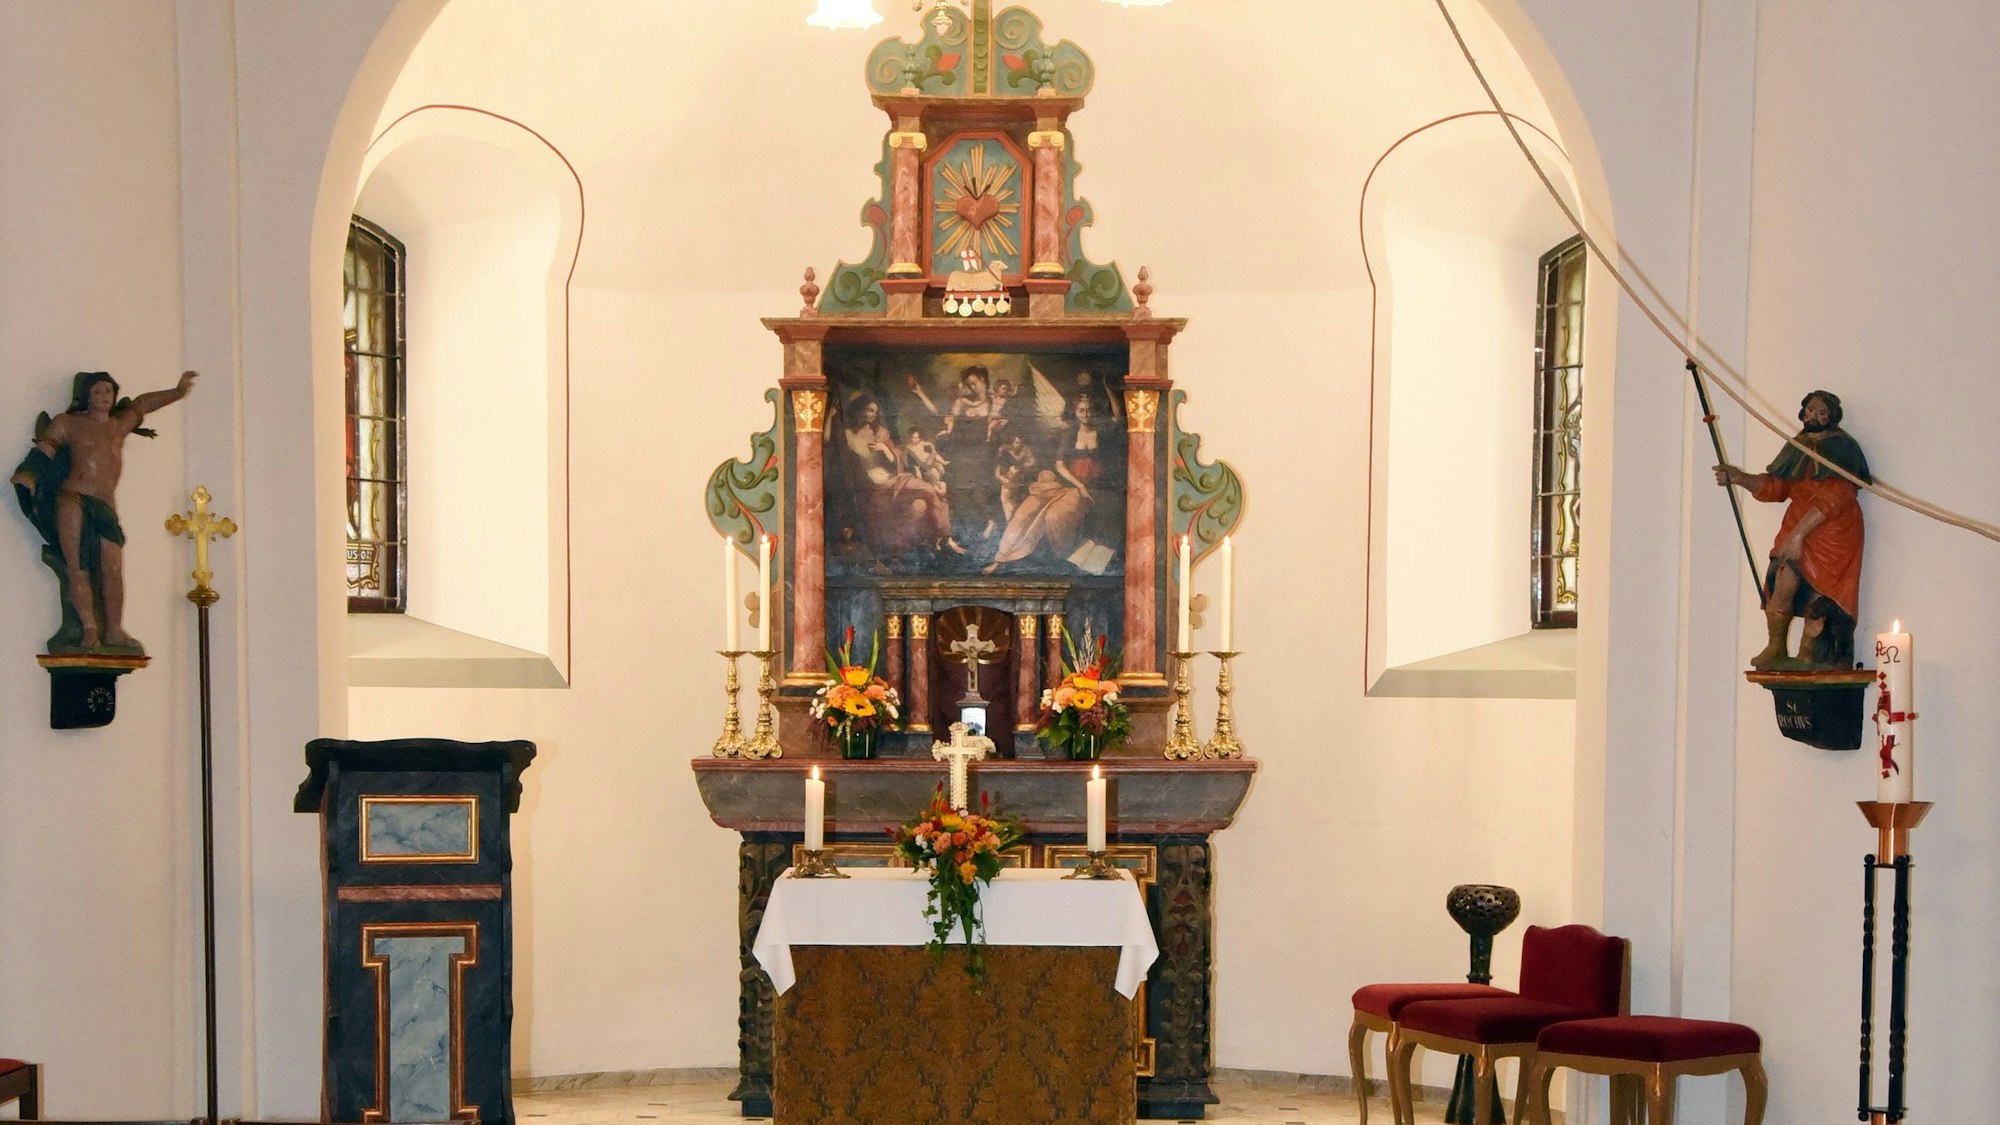 Ansicht auf einen Altarraum in einer Kapelle.